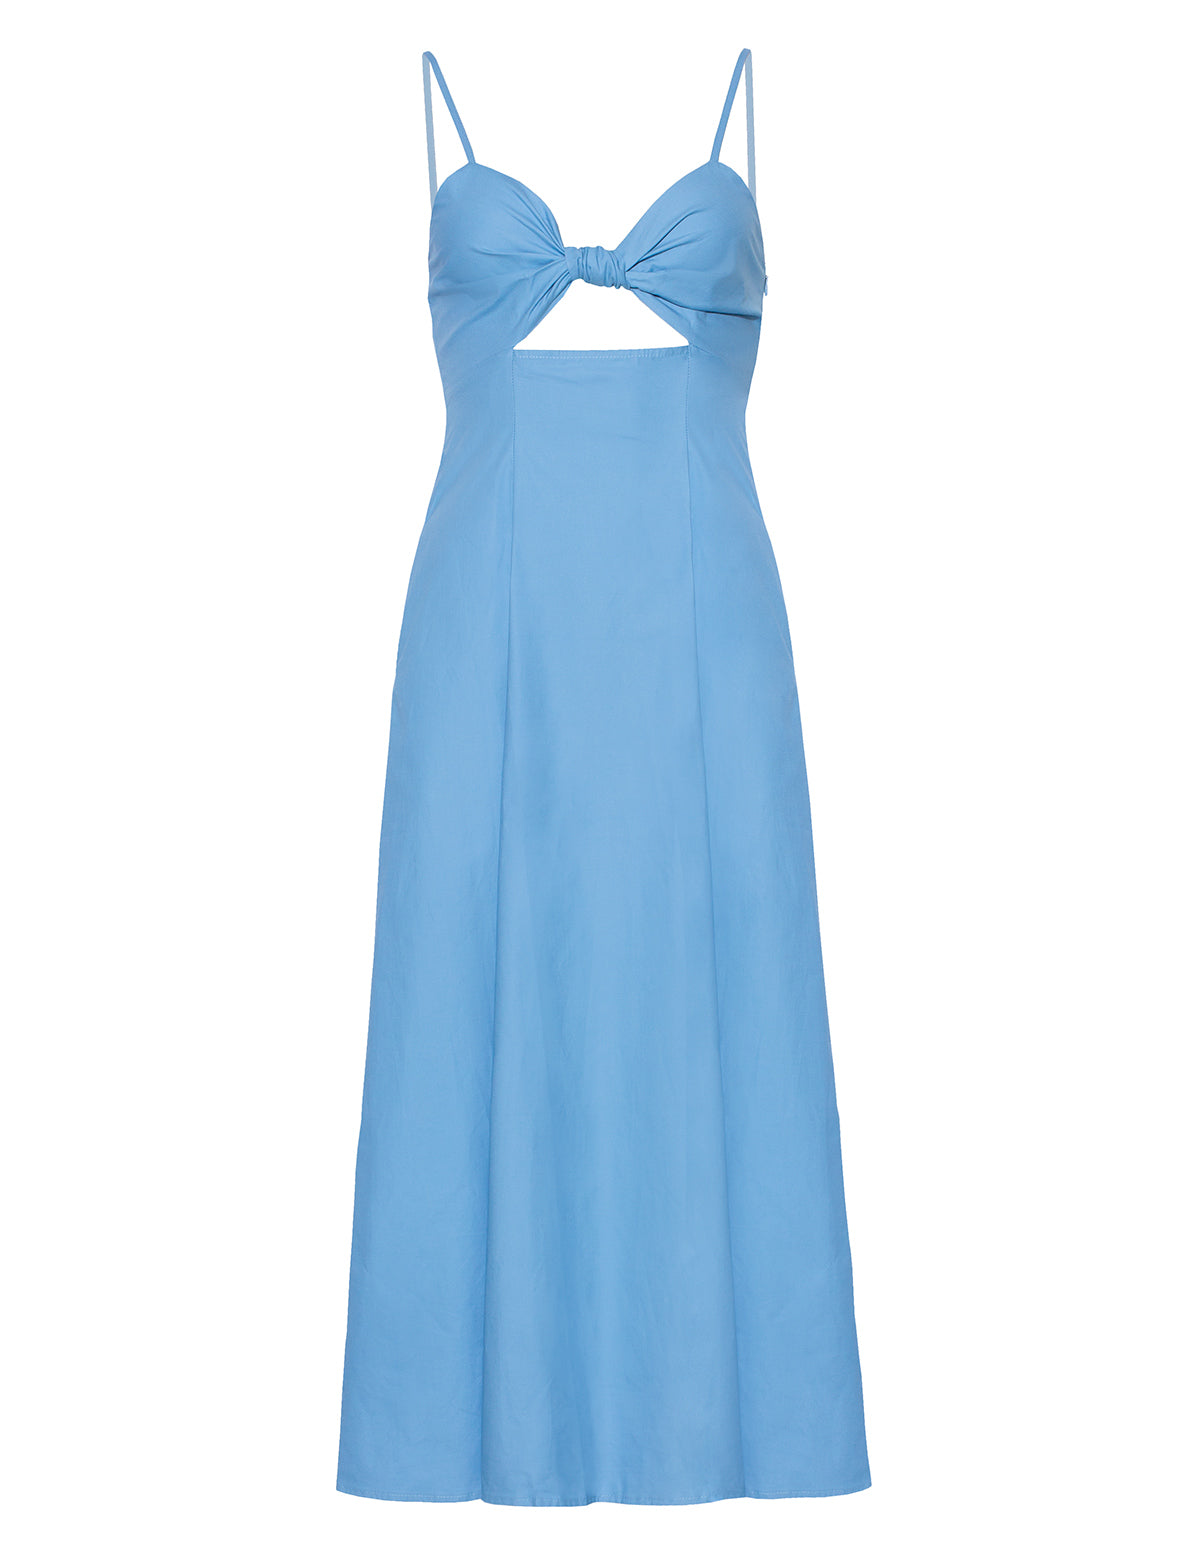 Amalfi Blue Knot Dress